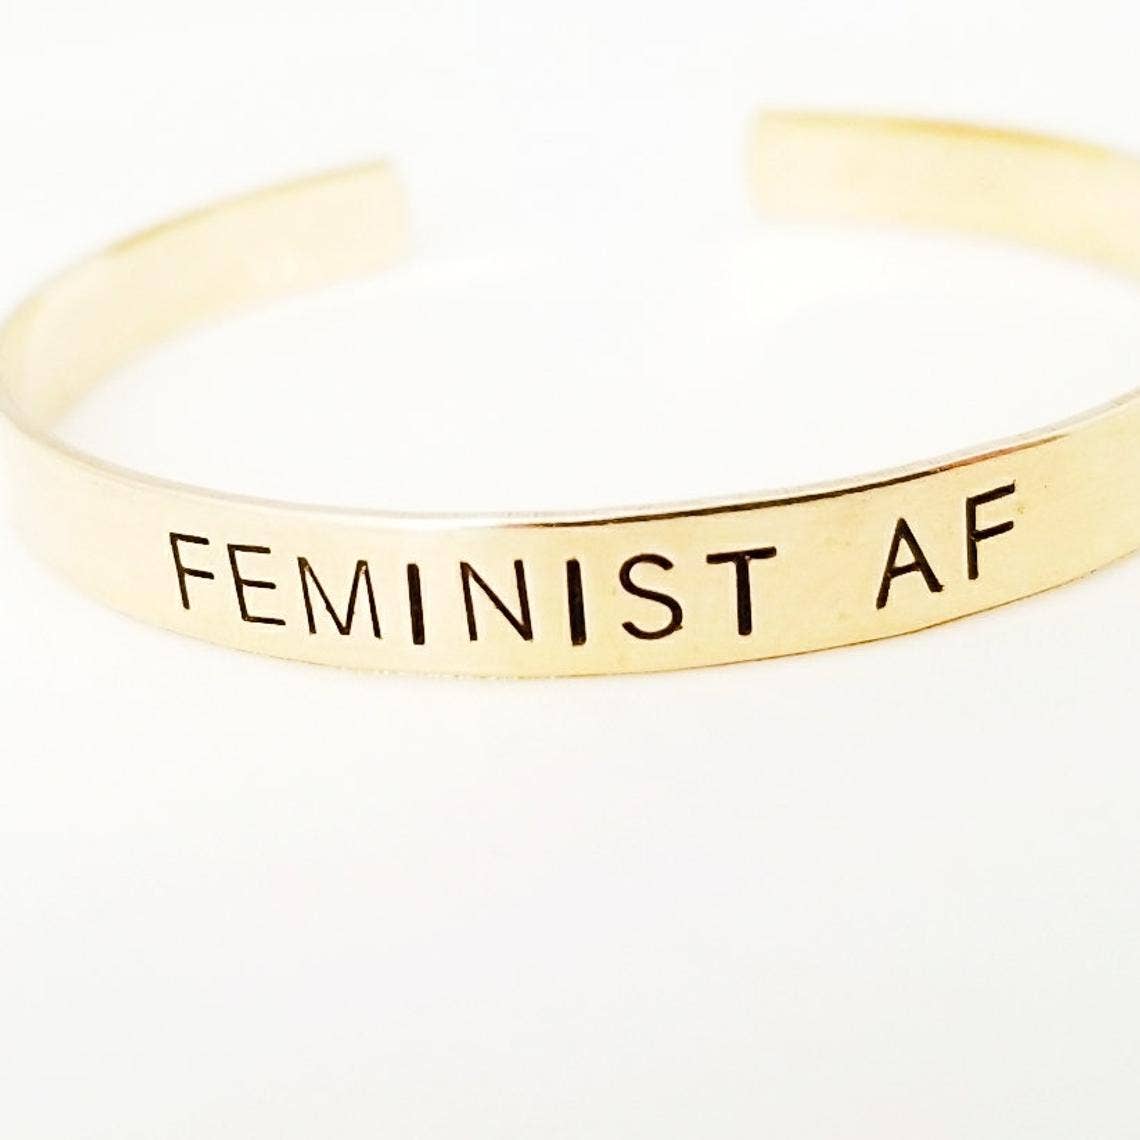 slide on gold bangle bracelet that says feminist af feminism fierce feminist as fuck jewelry bracelet women